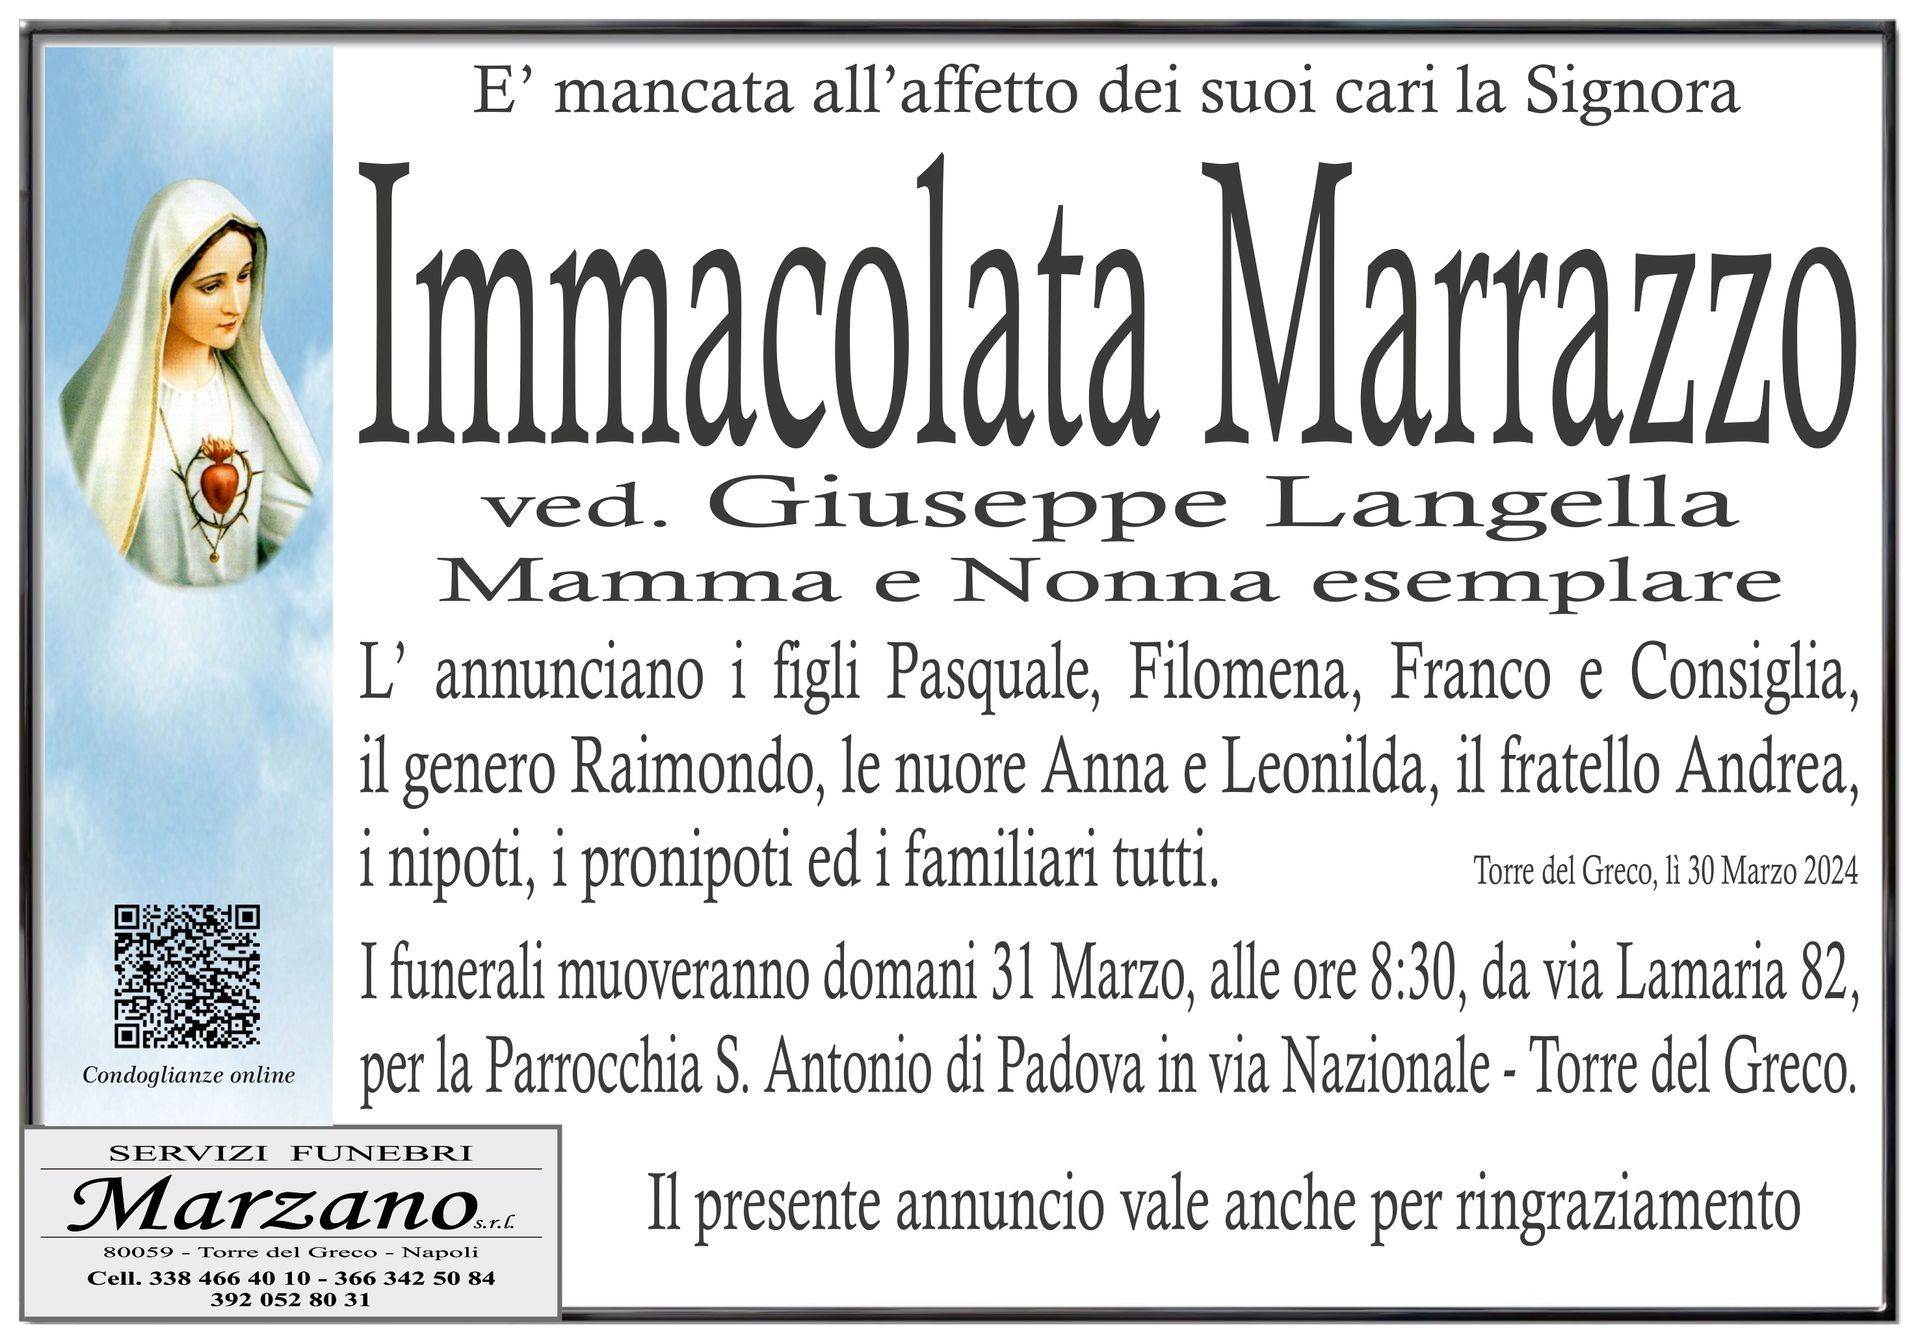 Immacolata Marrazzo